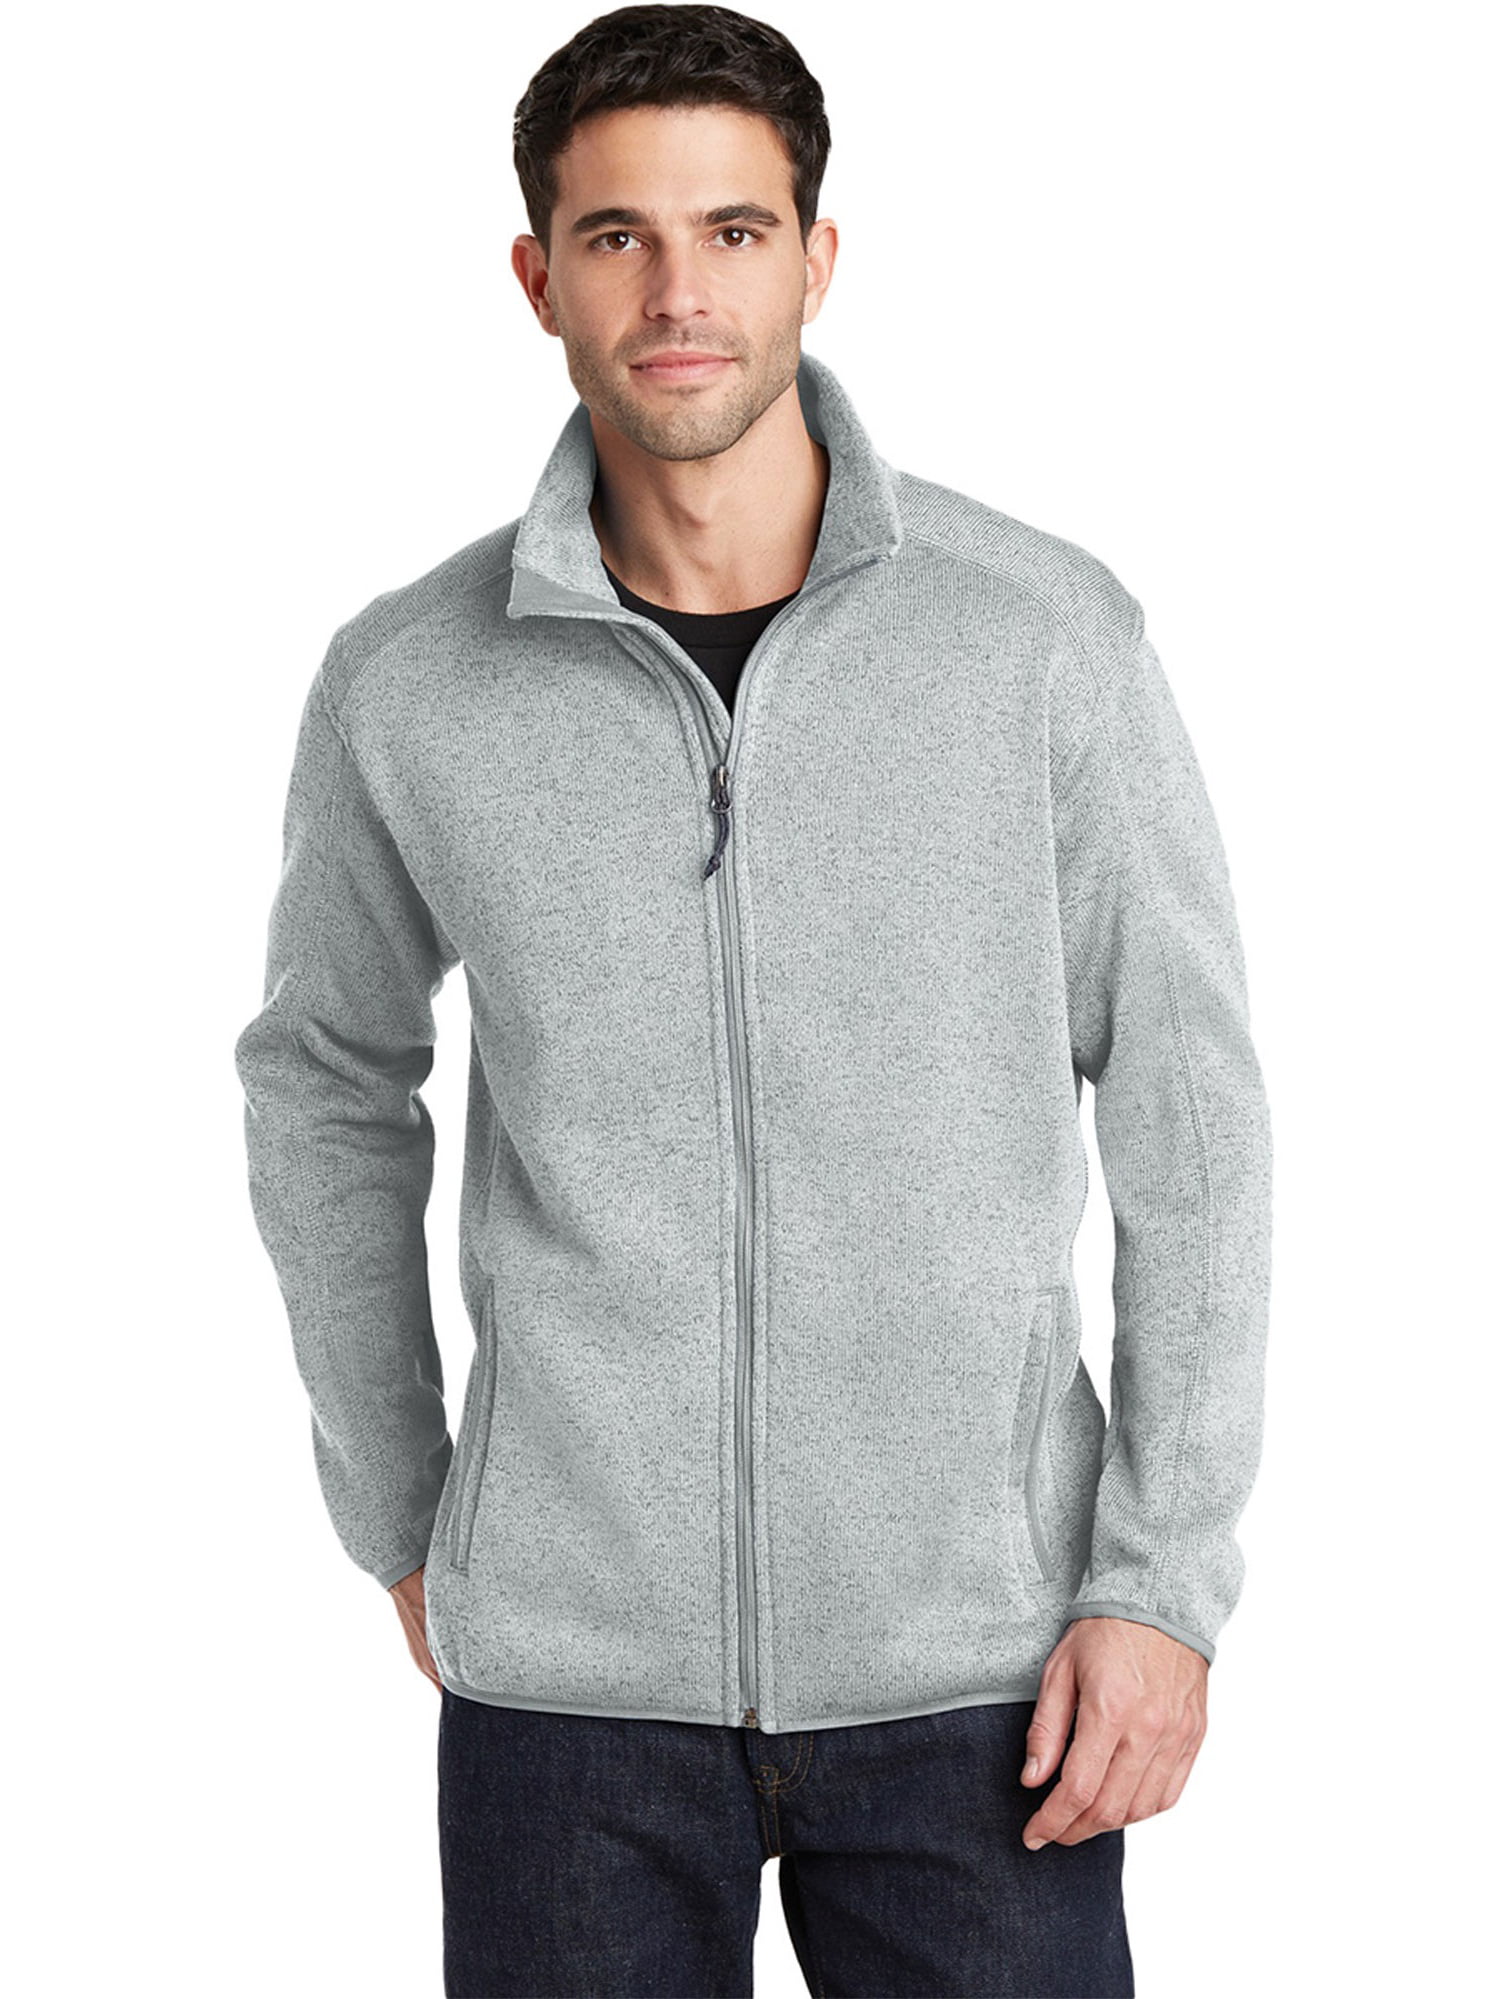 Port Authority Men's Sweater Fleece Jacket - Walmart.com